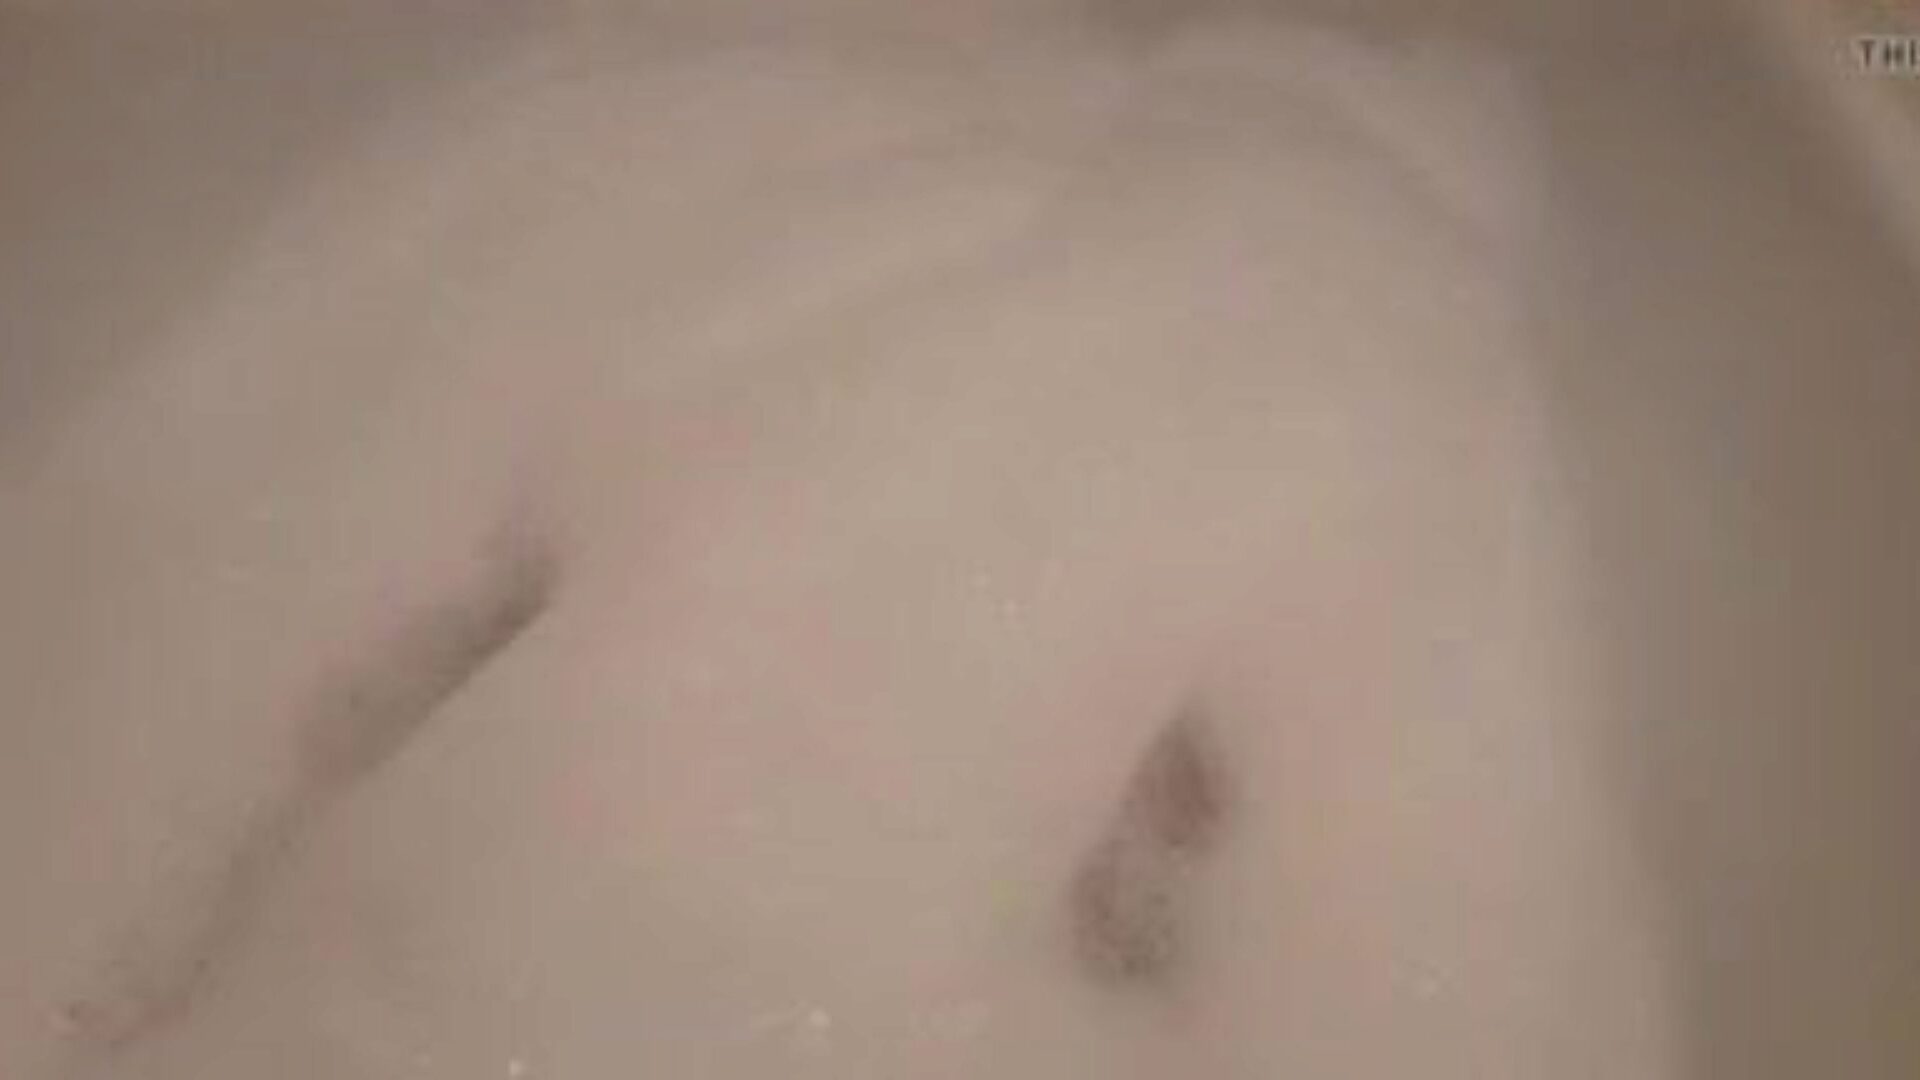 linda bath2: ingyenes feszes punci pornó videó 10 - xhamster nézni linda bath2 tube fuckfest videót ingyen mindenki számára a xhamsteren, a legszexisebb német szűk punci, víz és hatvankilenc pornó videó matricával